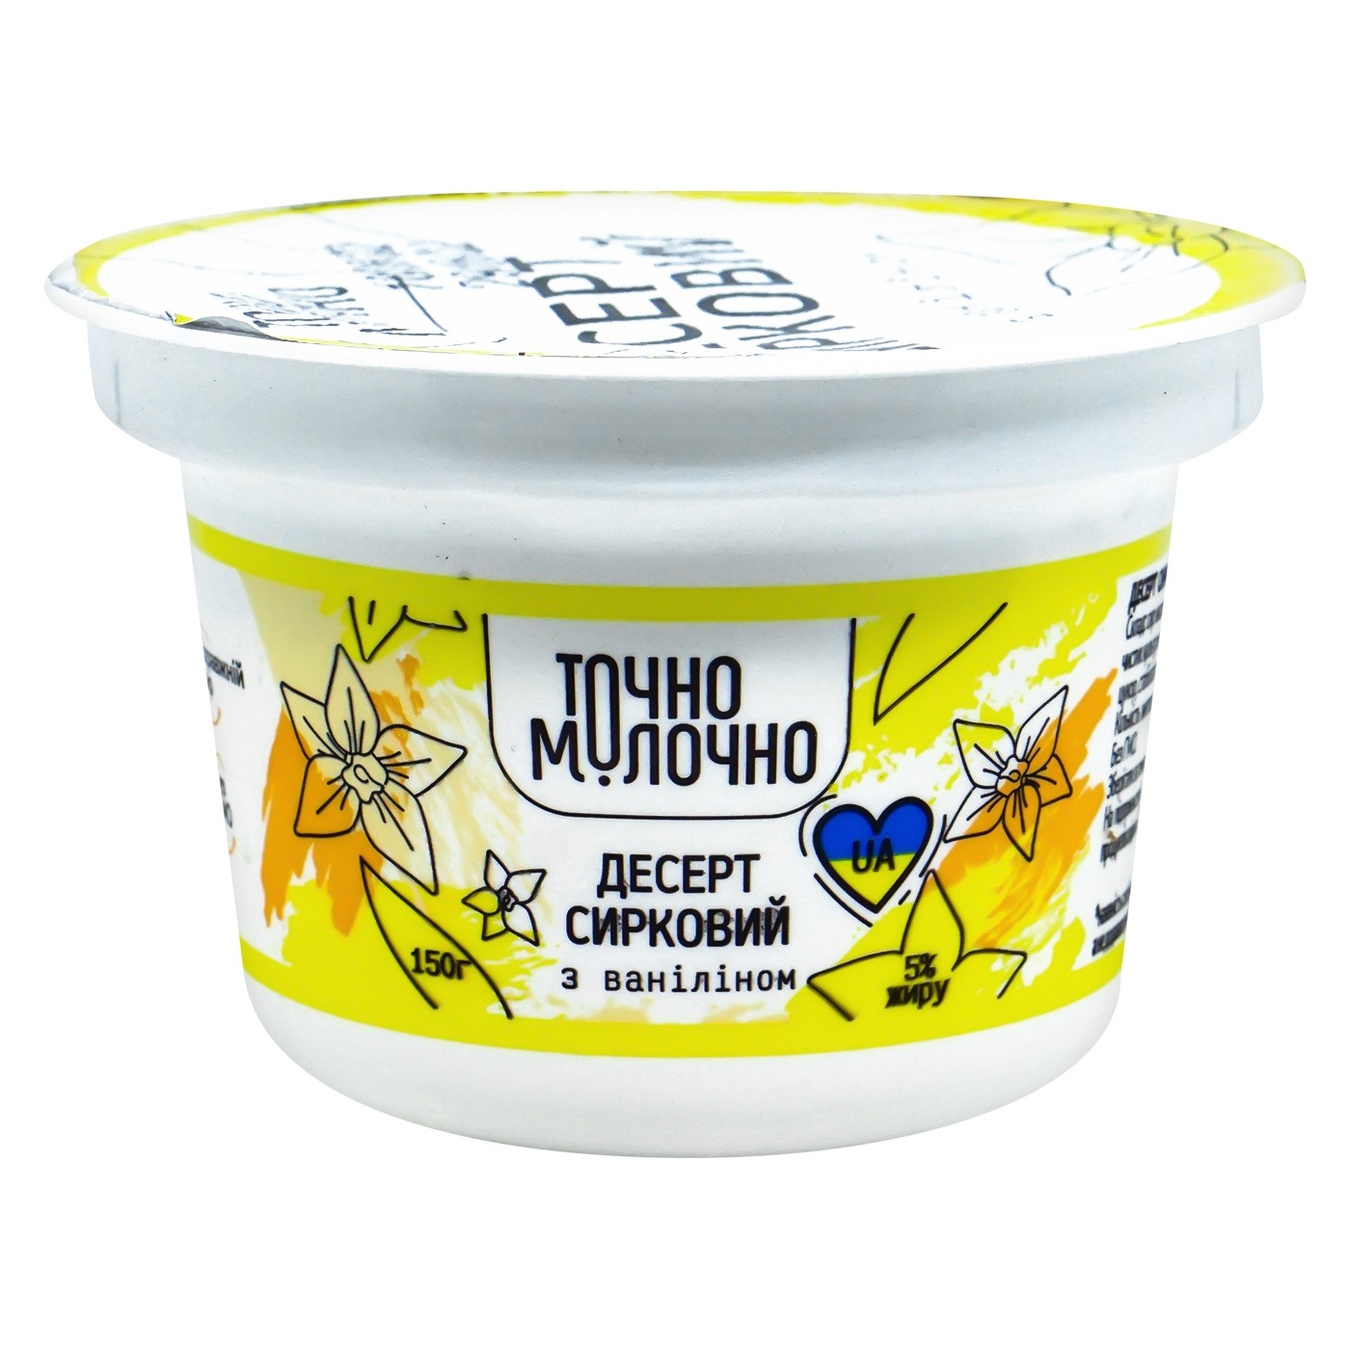 Cottage cheese dessert Tachono Milk with vanillin 5% 150g